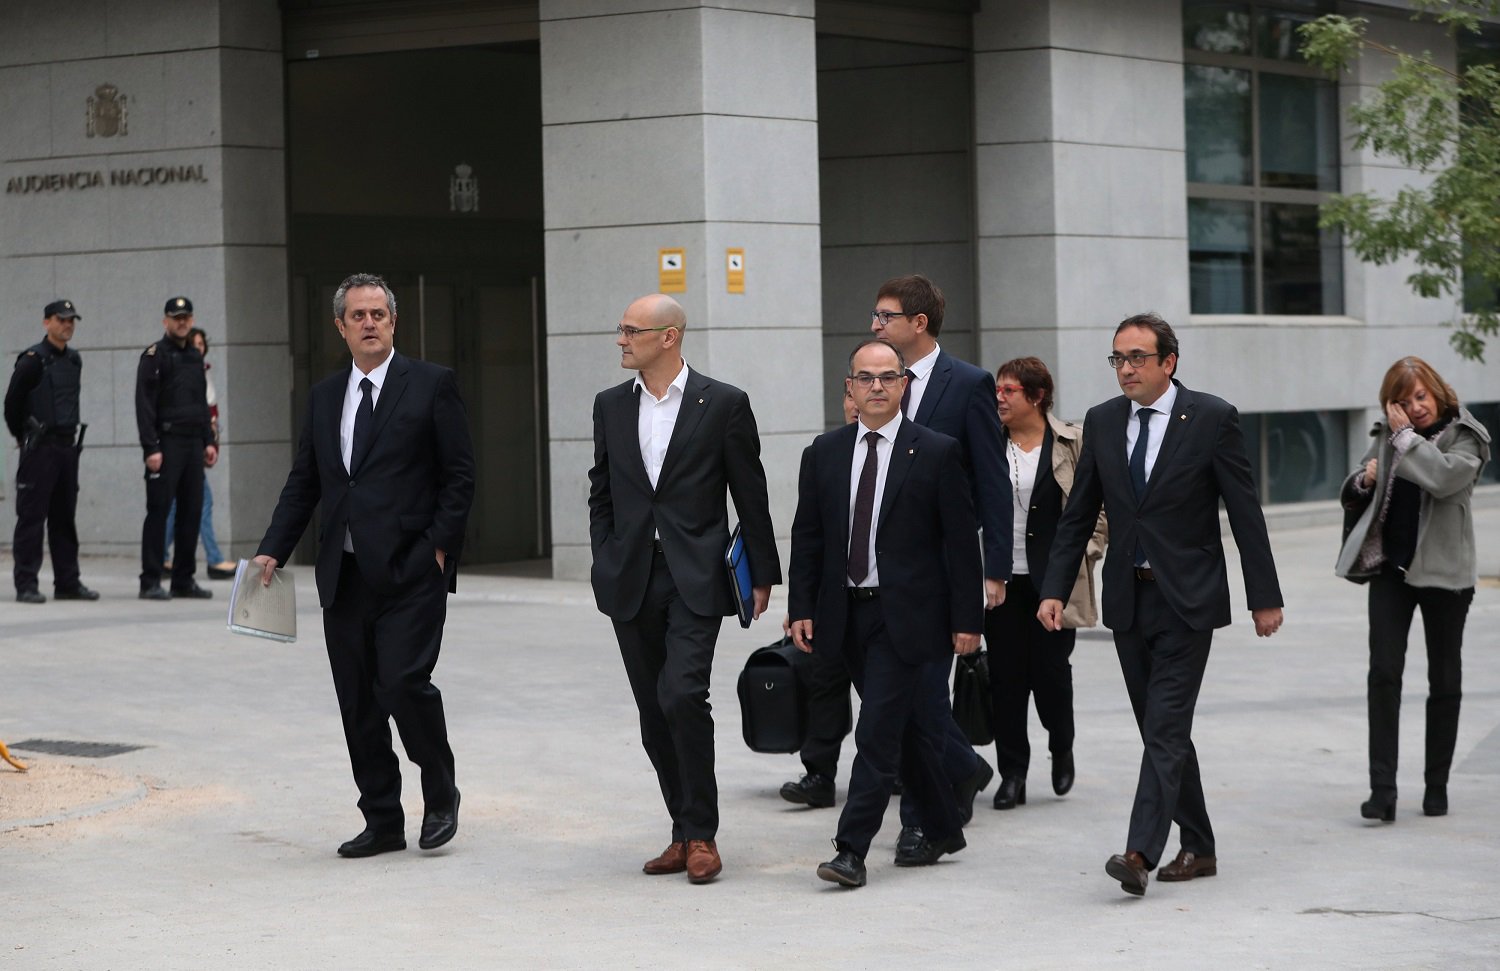 La fiscalía pide prisión incondicional para 8 miembros del gobierno catalán cesado